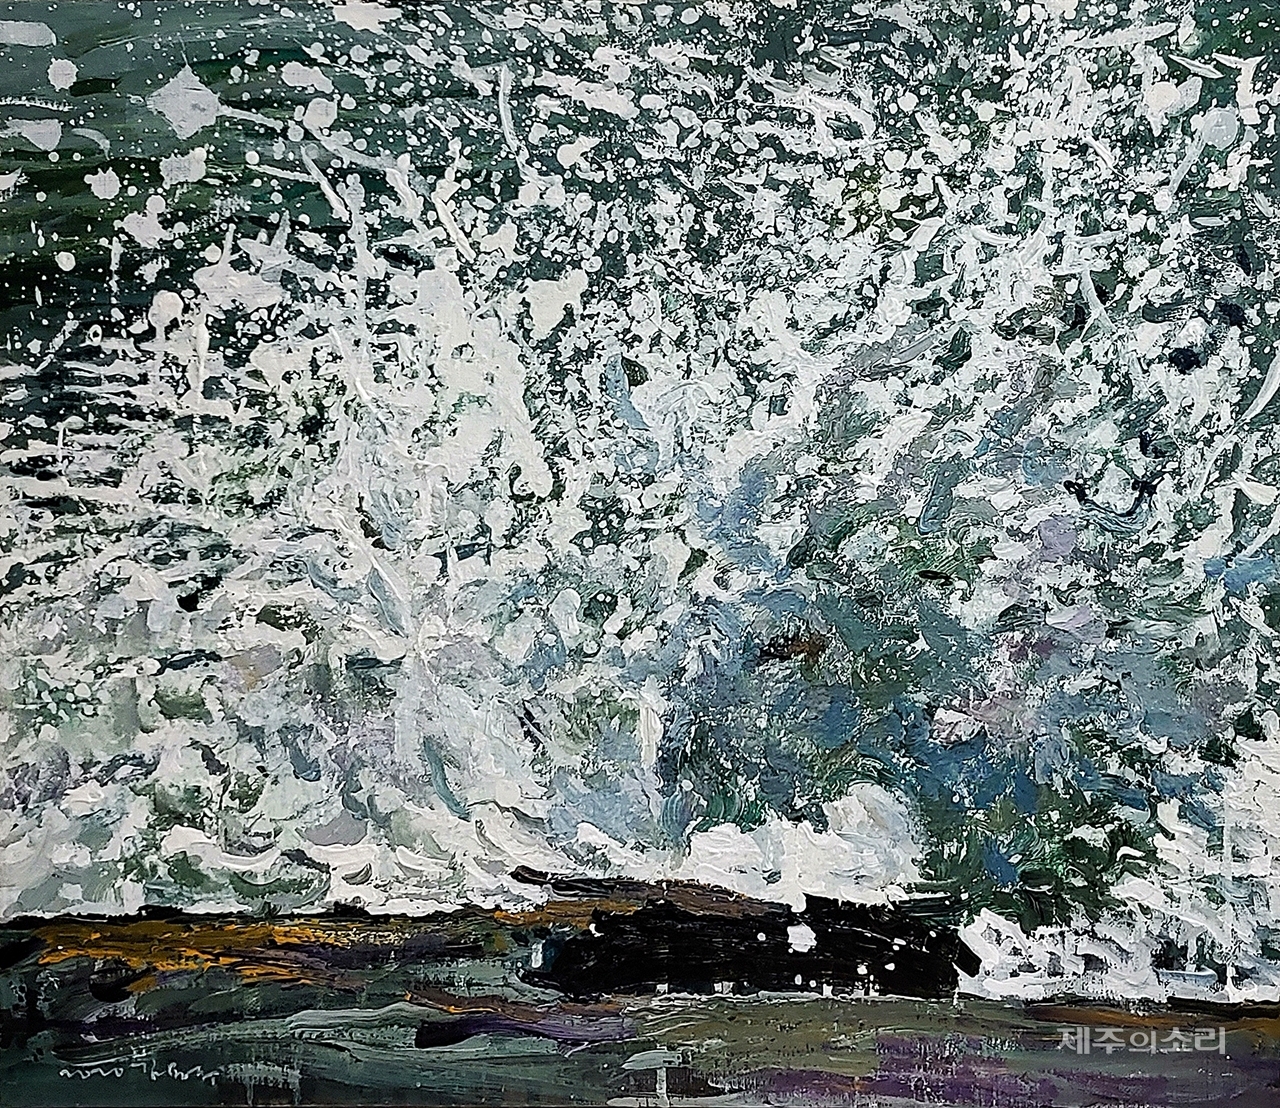 김용주 작가의 작품 '피어오르다', Acrylic on Canvas, 45.5x53cm, 2020. ⓒ제주의소리